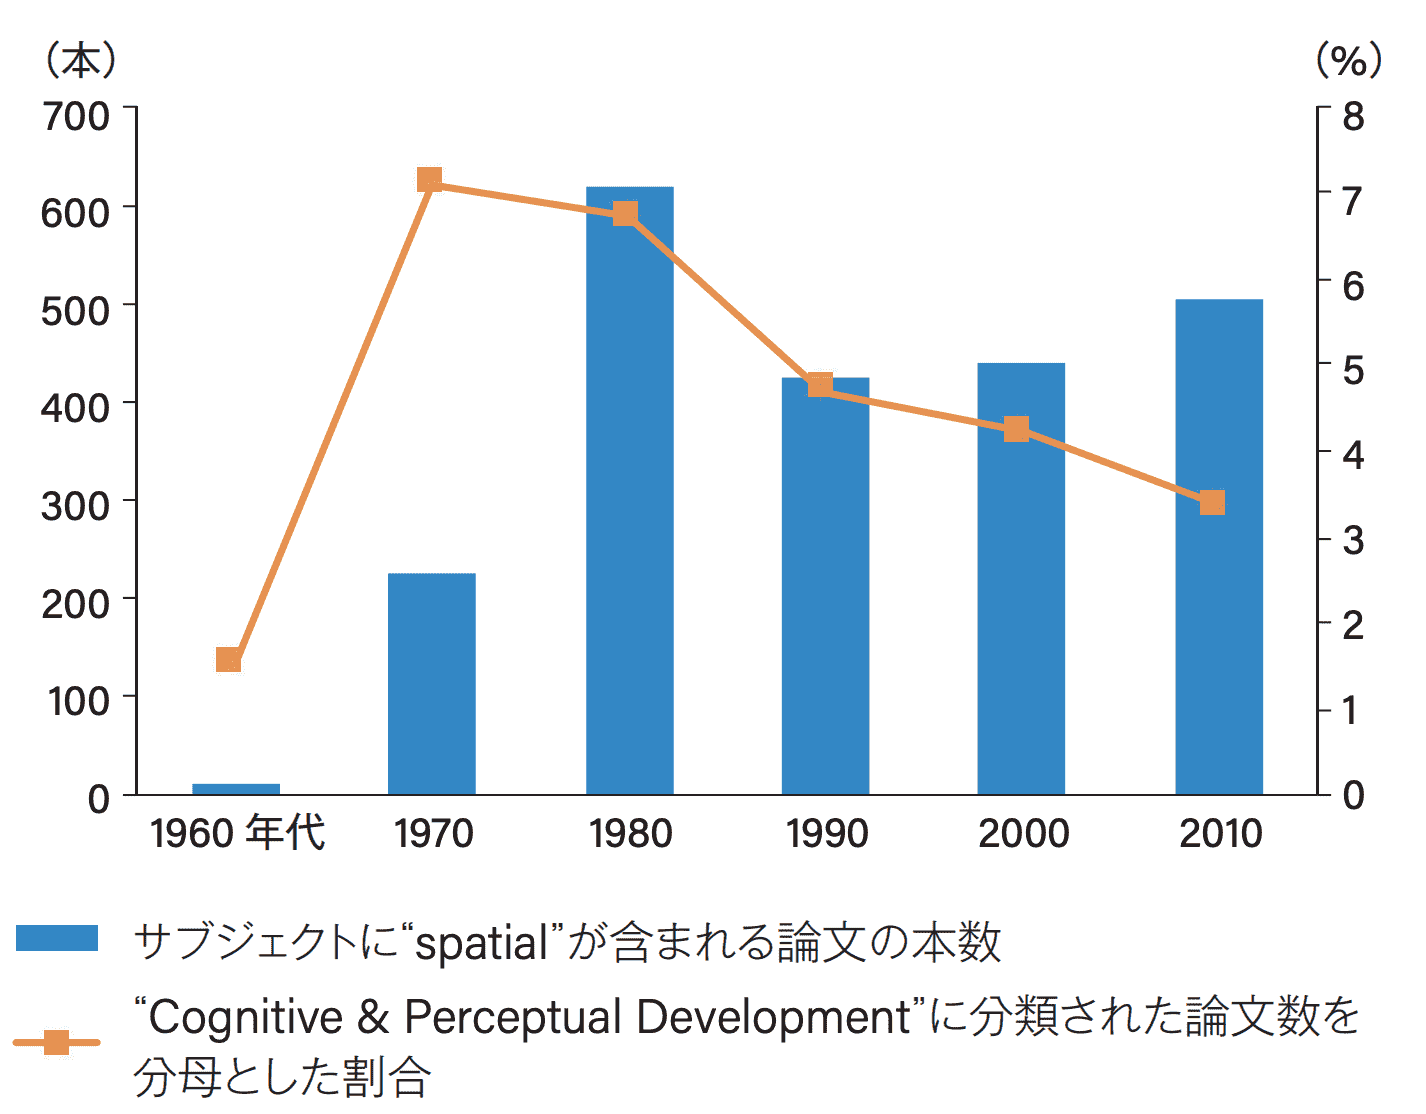 図2 PsycINFOで“Cognitive & Perceptual Development”に分類された論文の中で，サブジェクトに“spatial”が含まれ年齢層がchildhood （birth-12 yrs）である論文の本数（左軸）と割合（右軸）